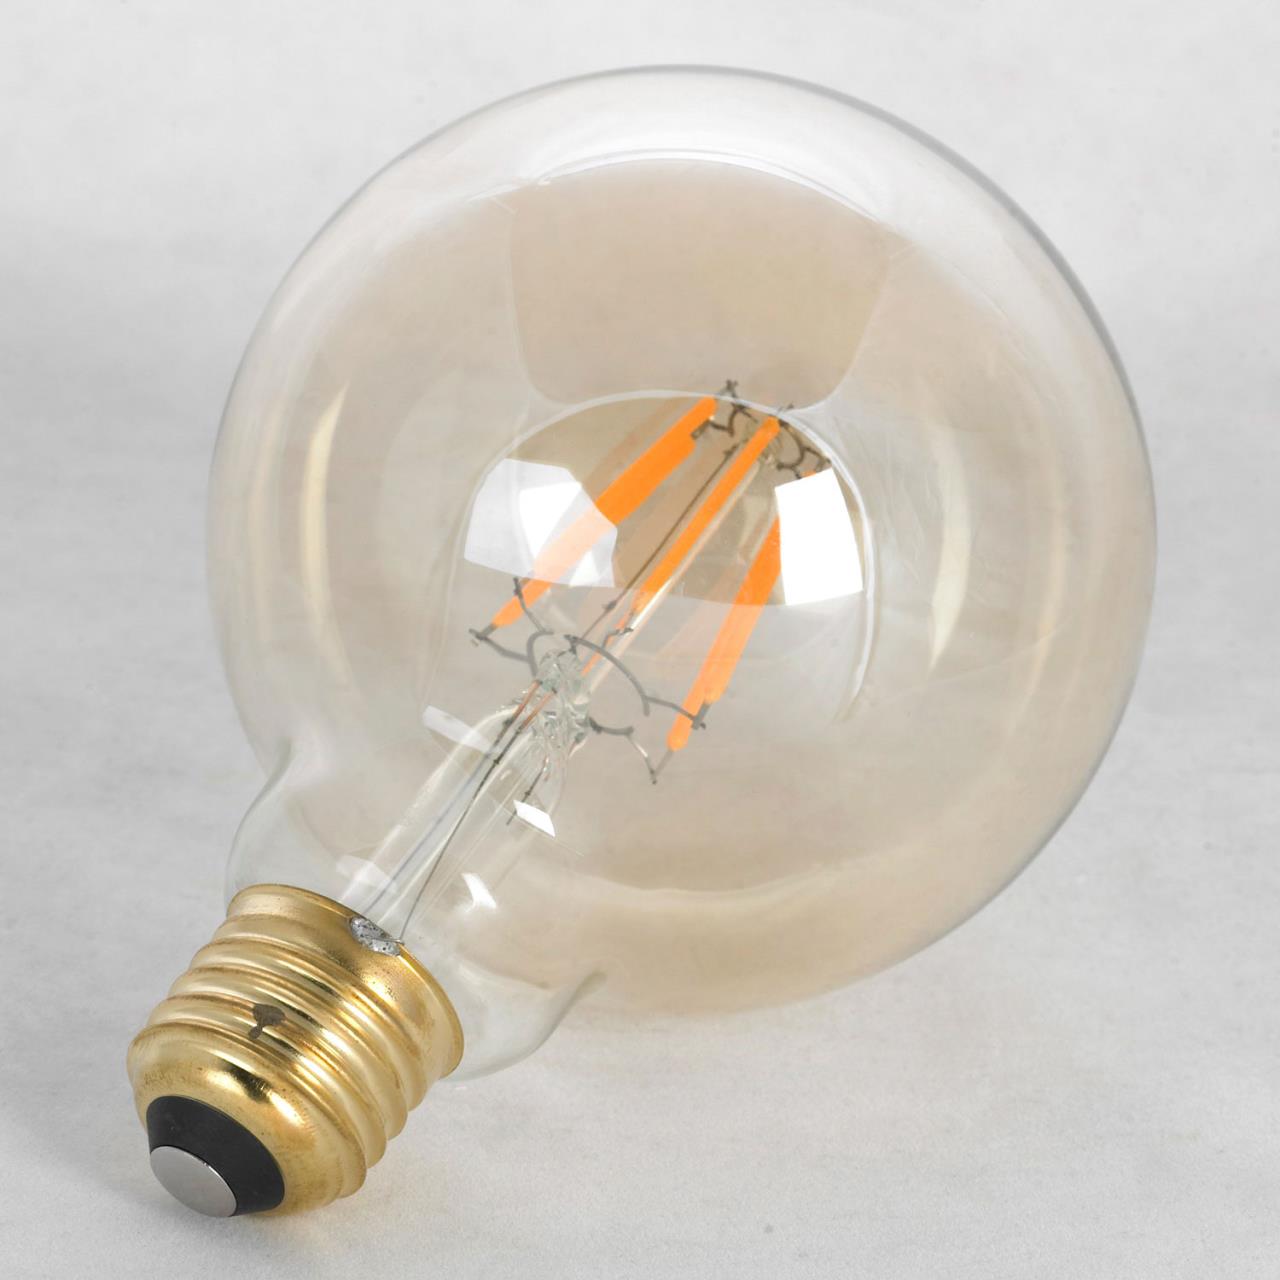 Лампа светодиодная GF-L-2106 9.5x14 6W